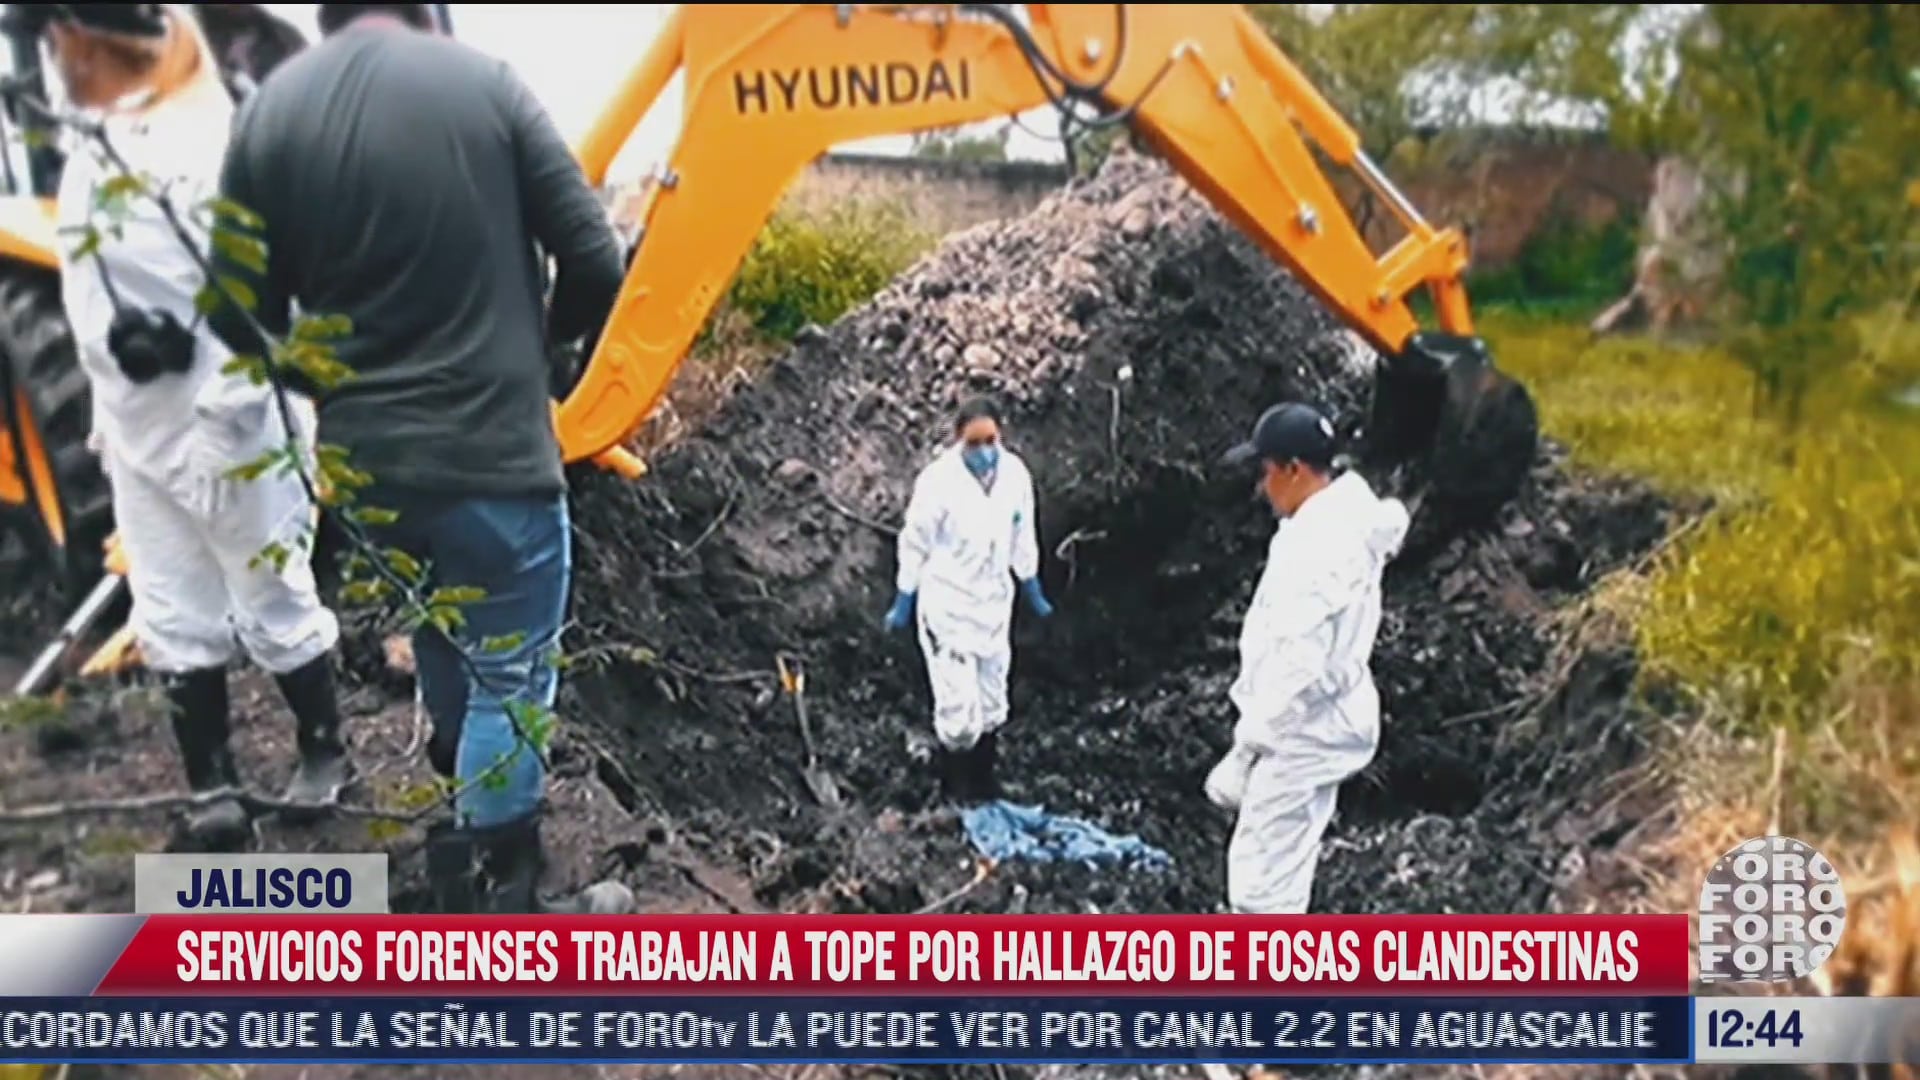 servicios forenses trabajan a tope por hallazgo de fosas clandestinas en jalisco